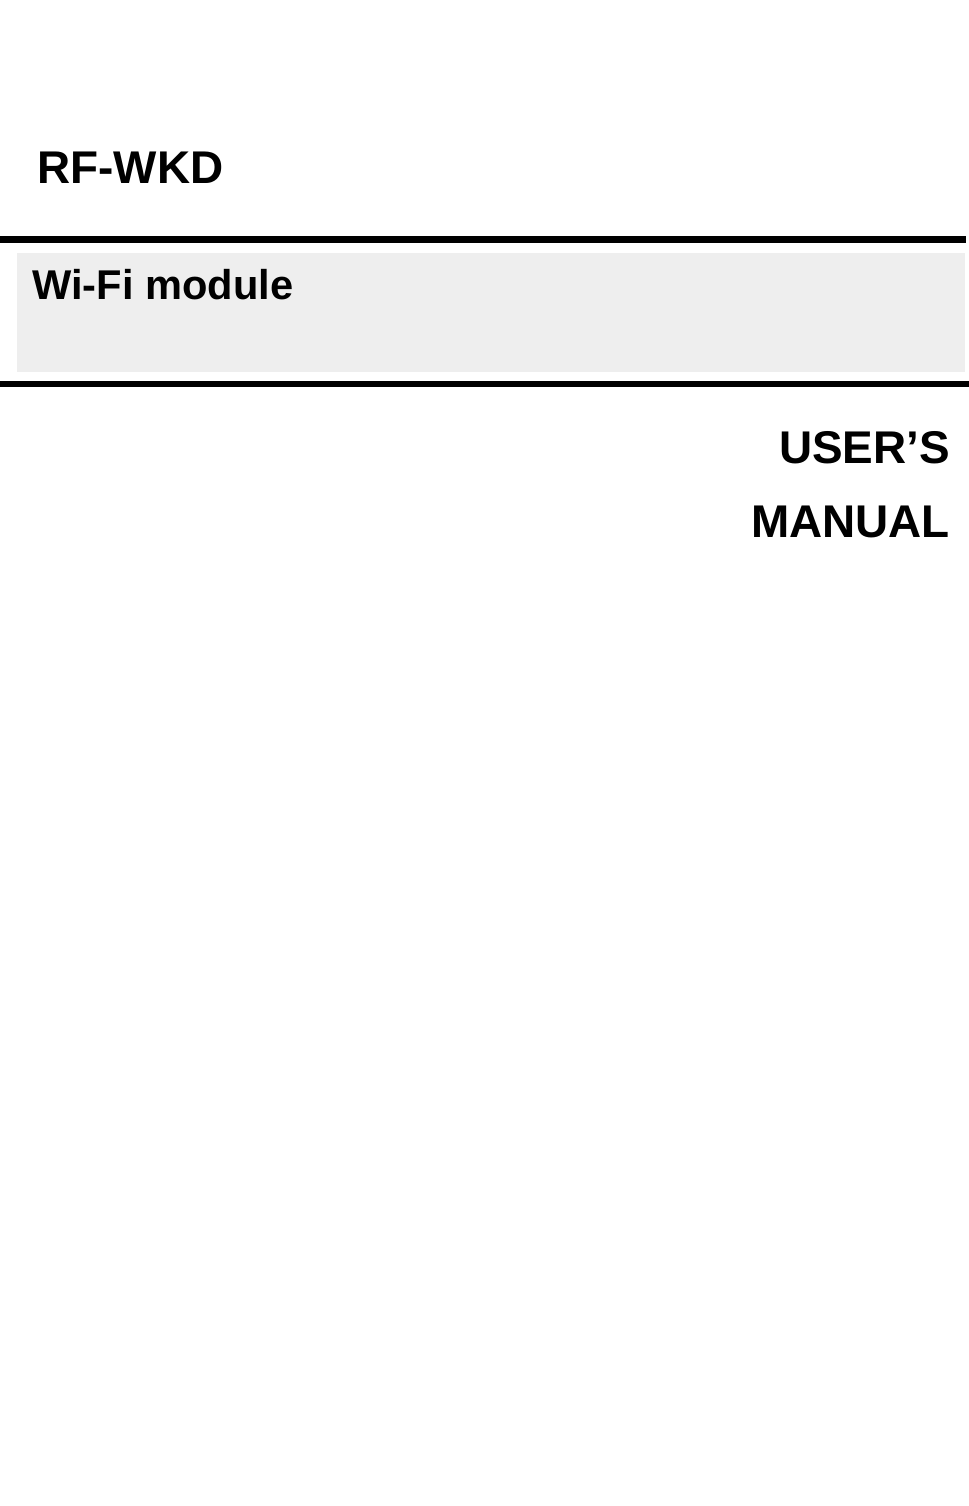                            USER’S    MANUALRF-WKD Wi-Fi module 